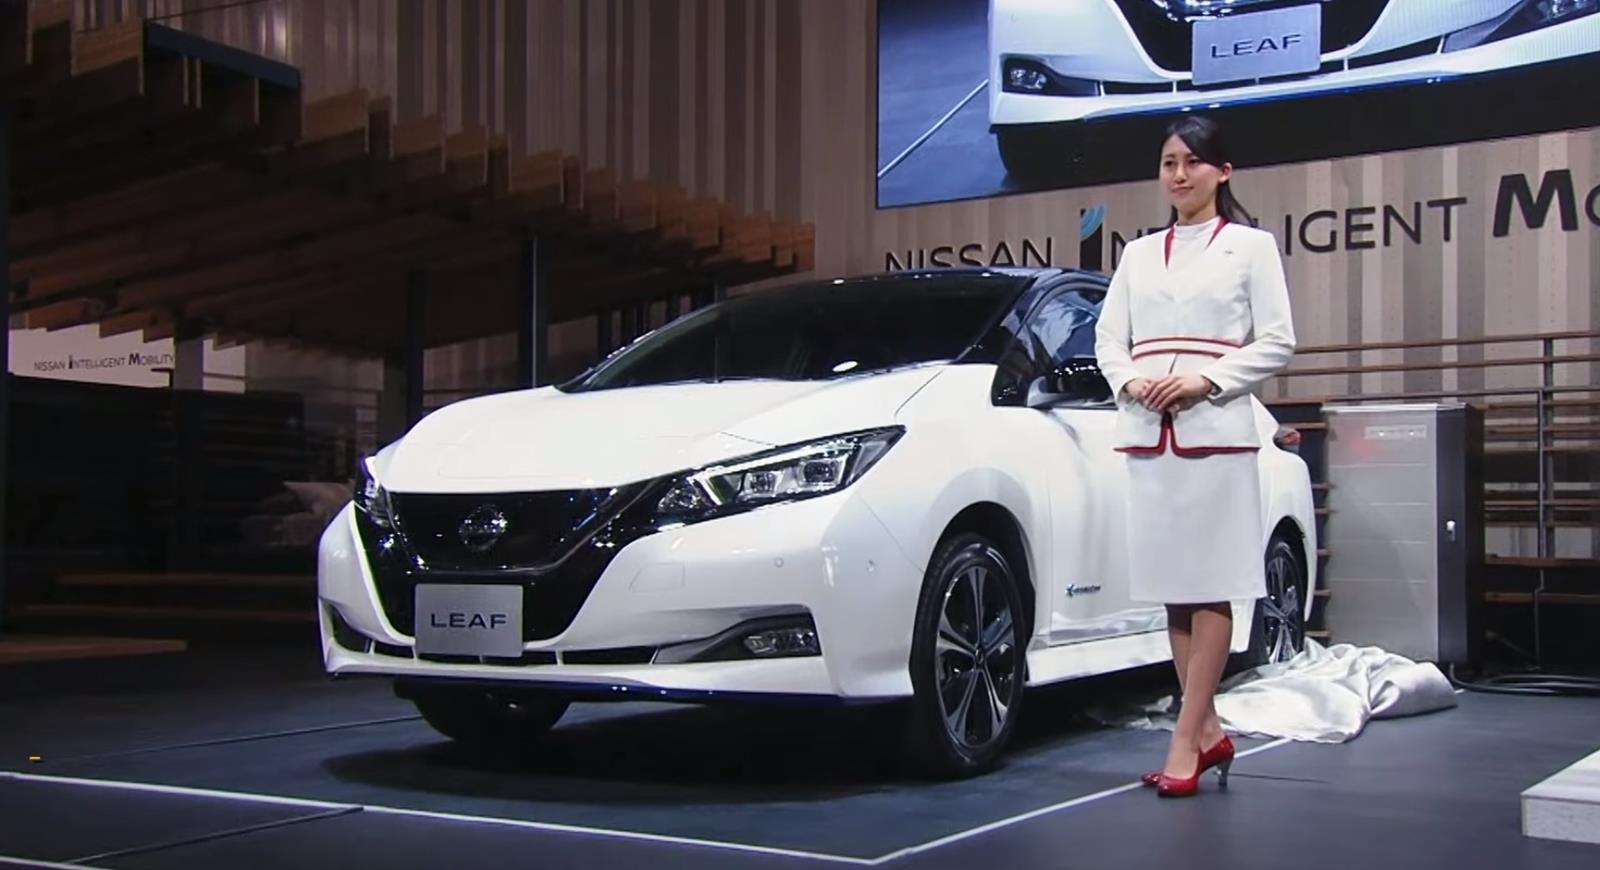 Nissan ulepszył recykling elektrycznych silników, elektryczne samochody stały się właśnie jeszcze bardziej eko, recykling elektrycznych silników, Nissan